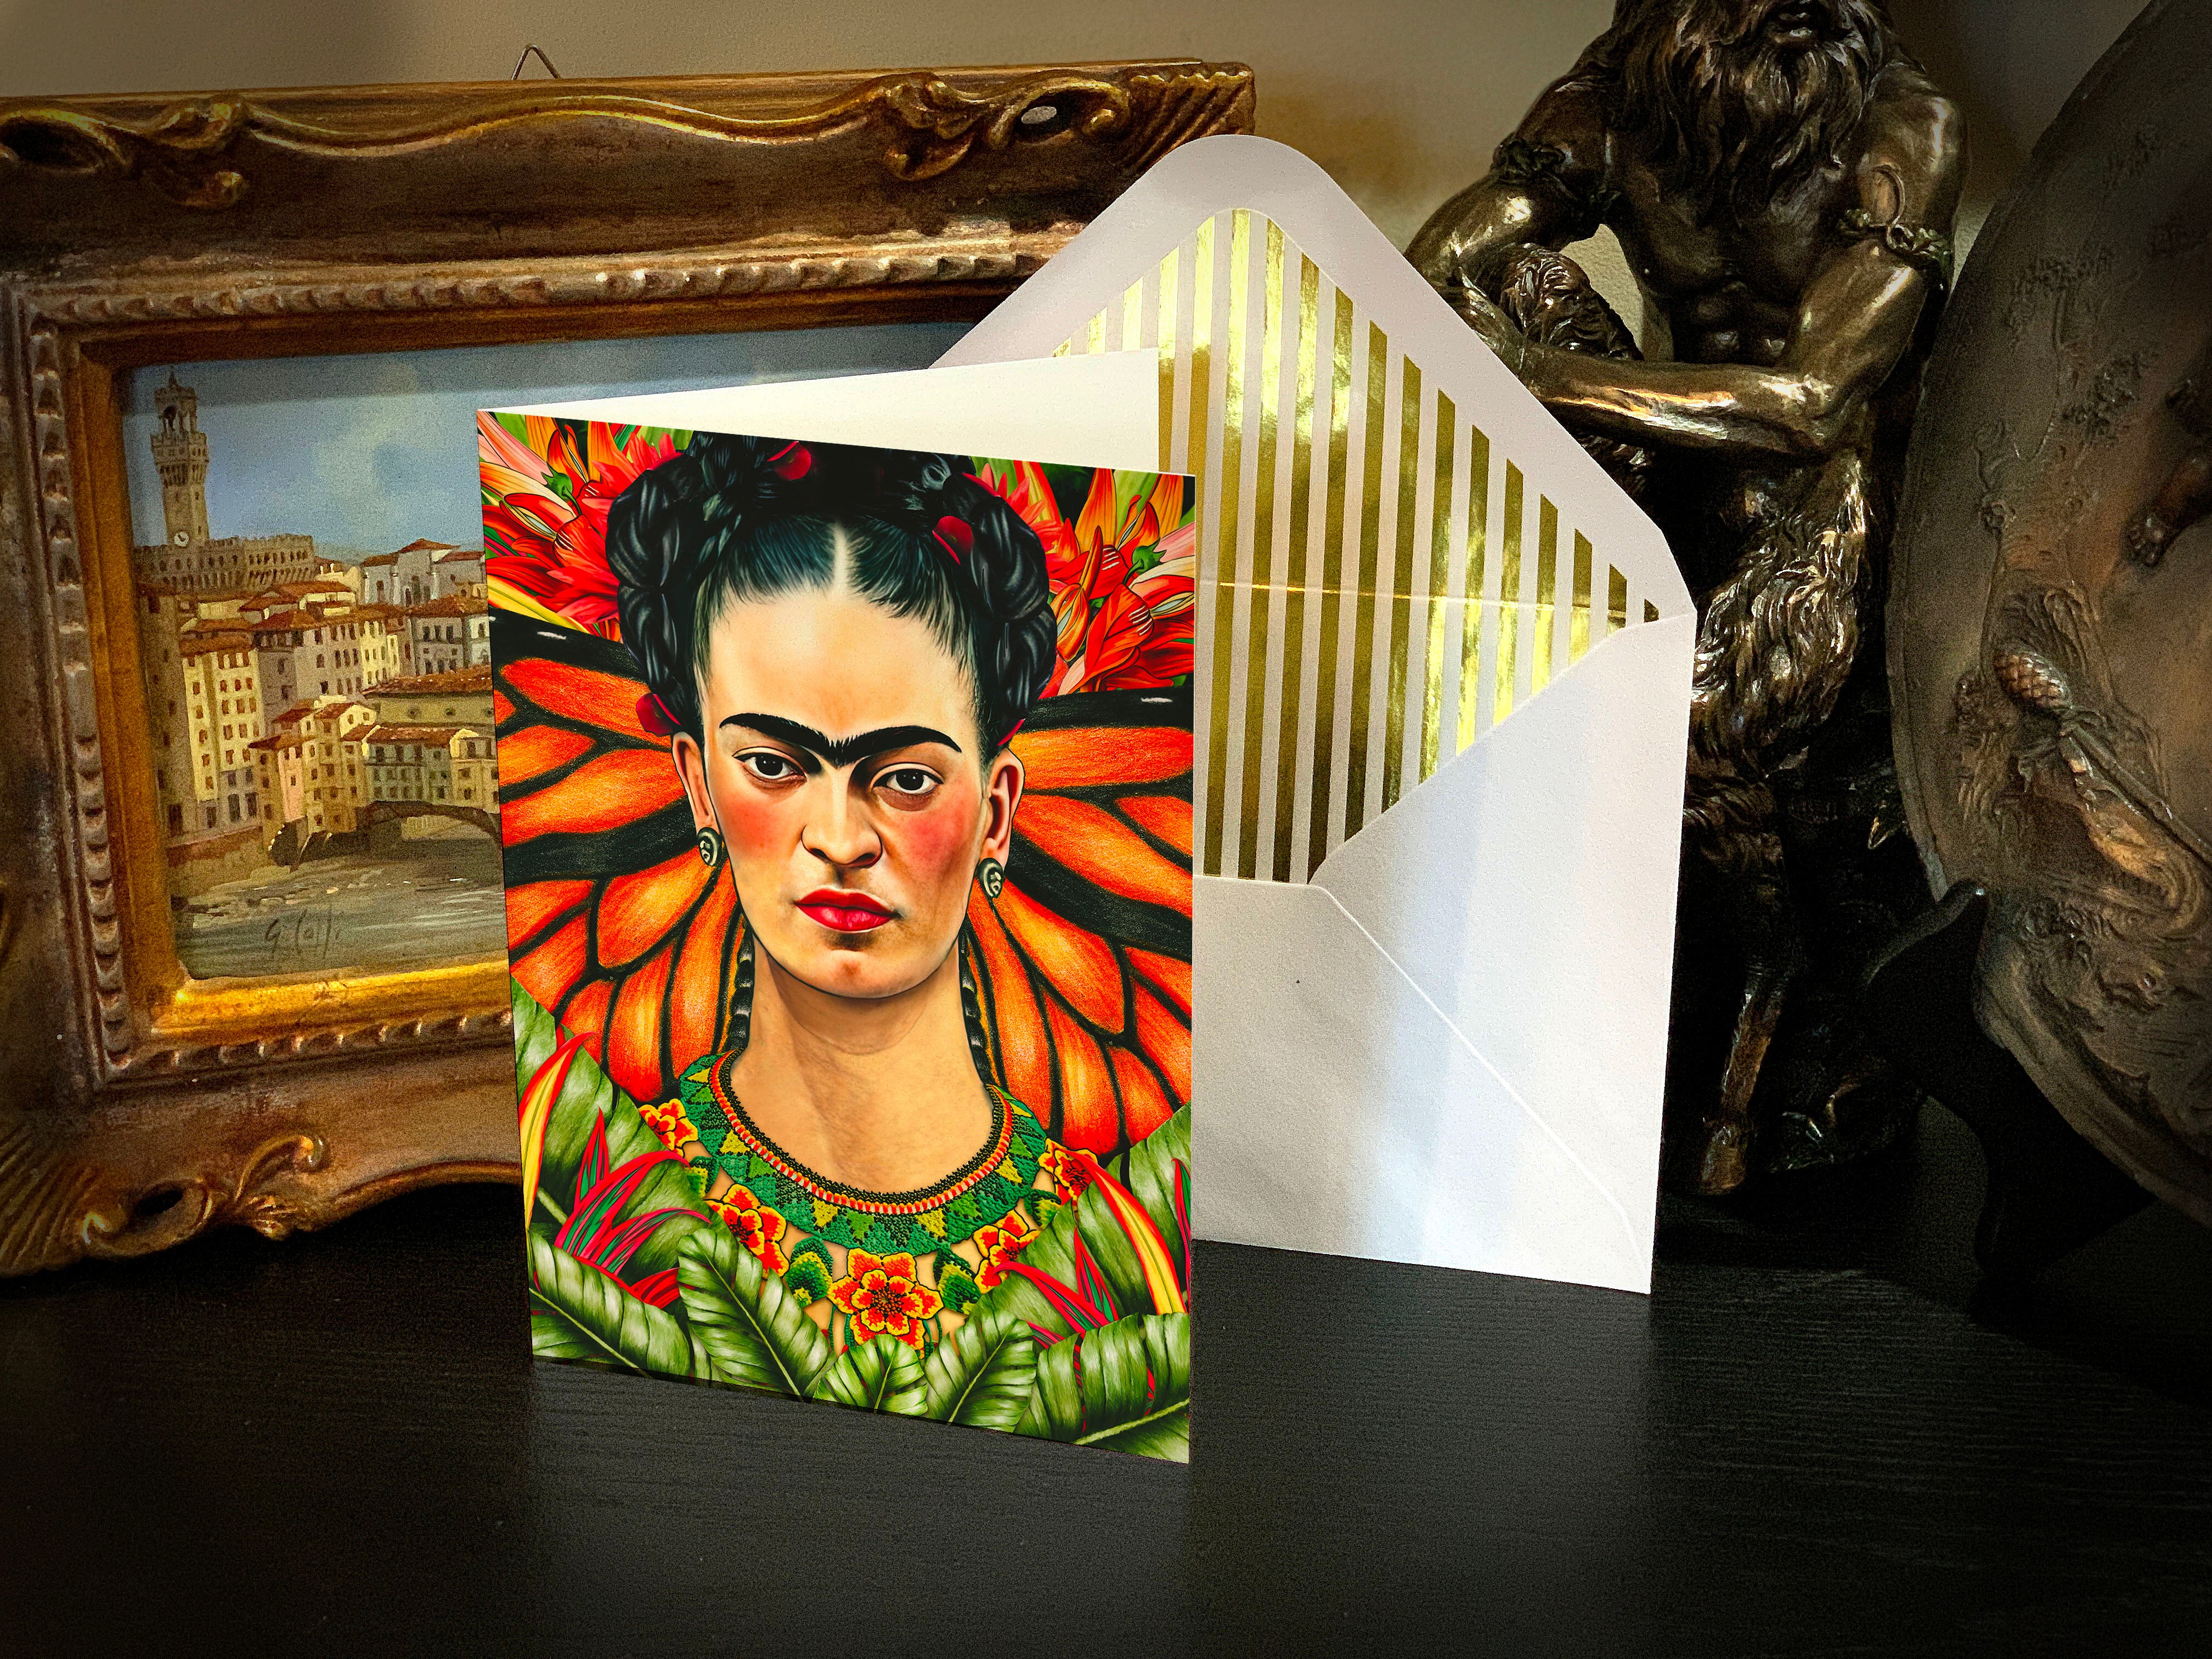 Portrait of Frida Kahlo Tropical Maximalist Greeting Card with Elegant Striped Gold Foil Envelope, 1 Card/Envelope